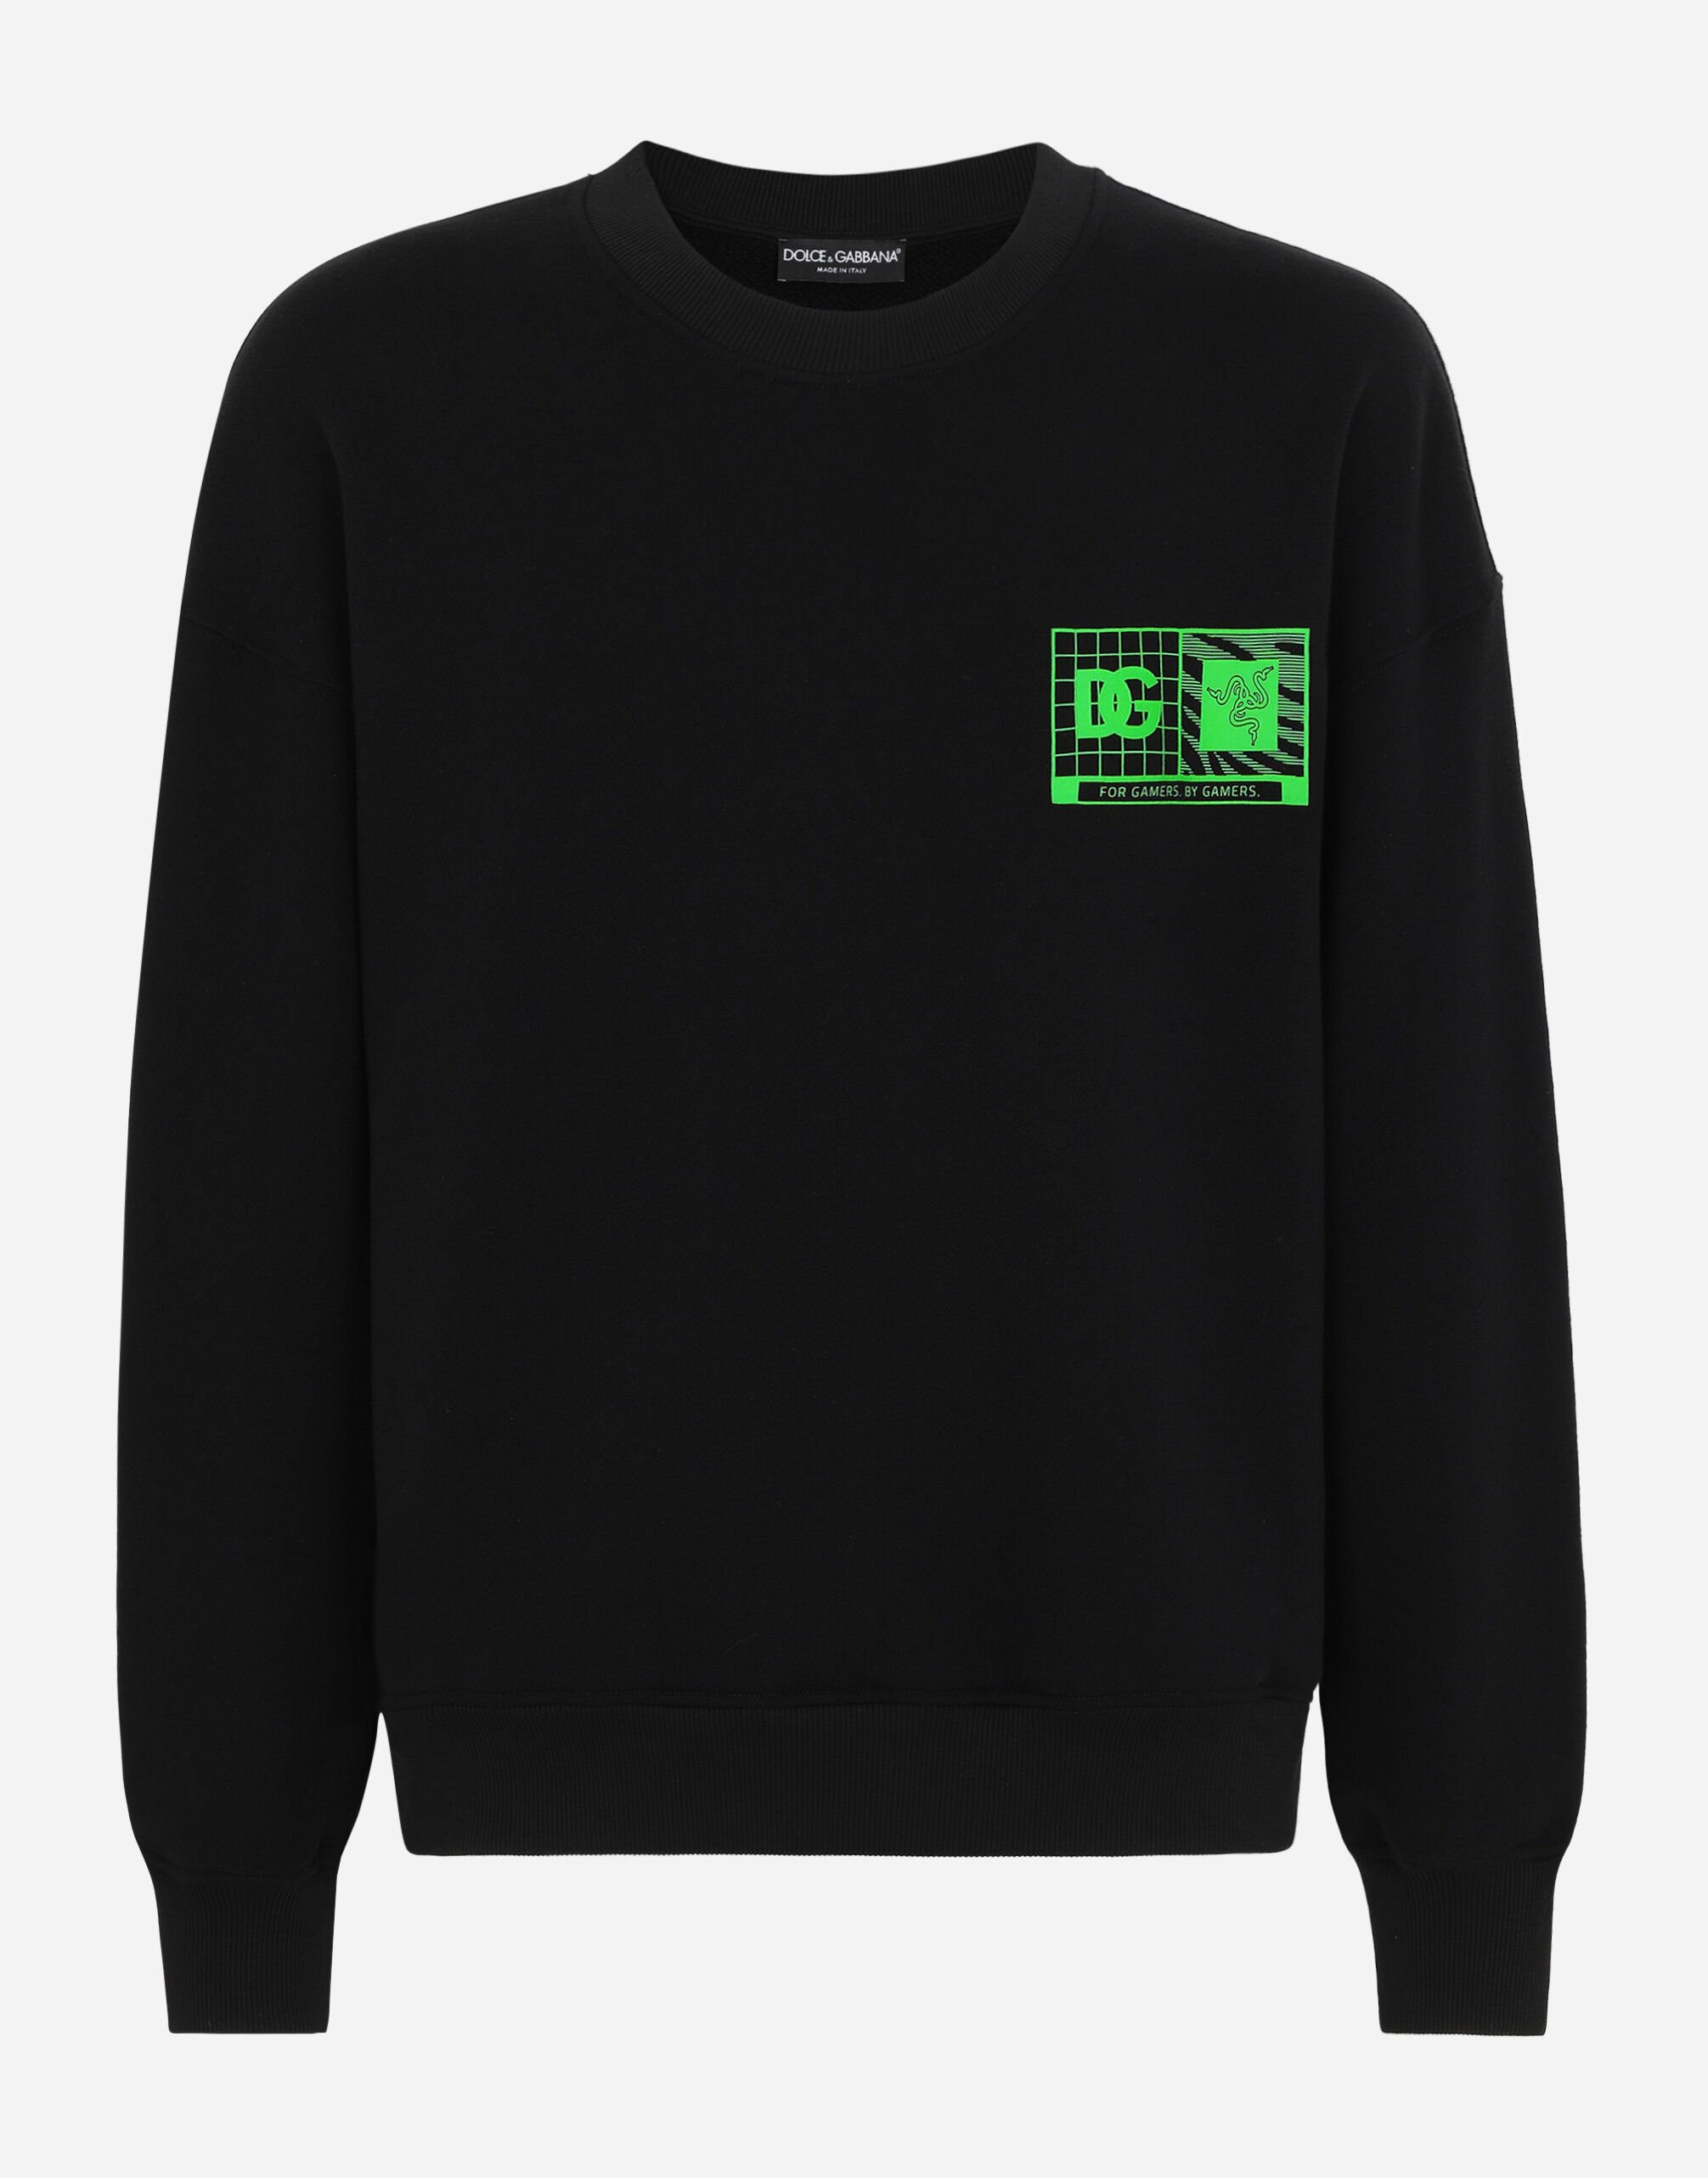 Dolce & Gabbana Cotton round-neck sweatshirt RAZER Black I8ANTMG7M9C